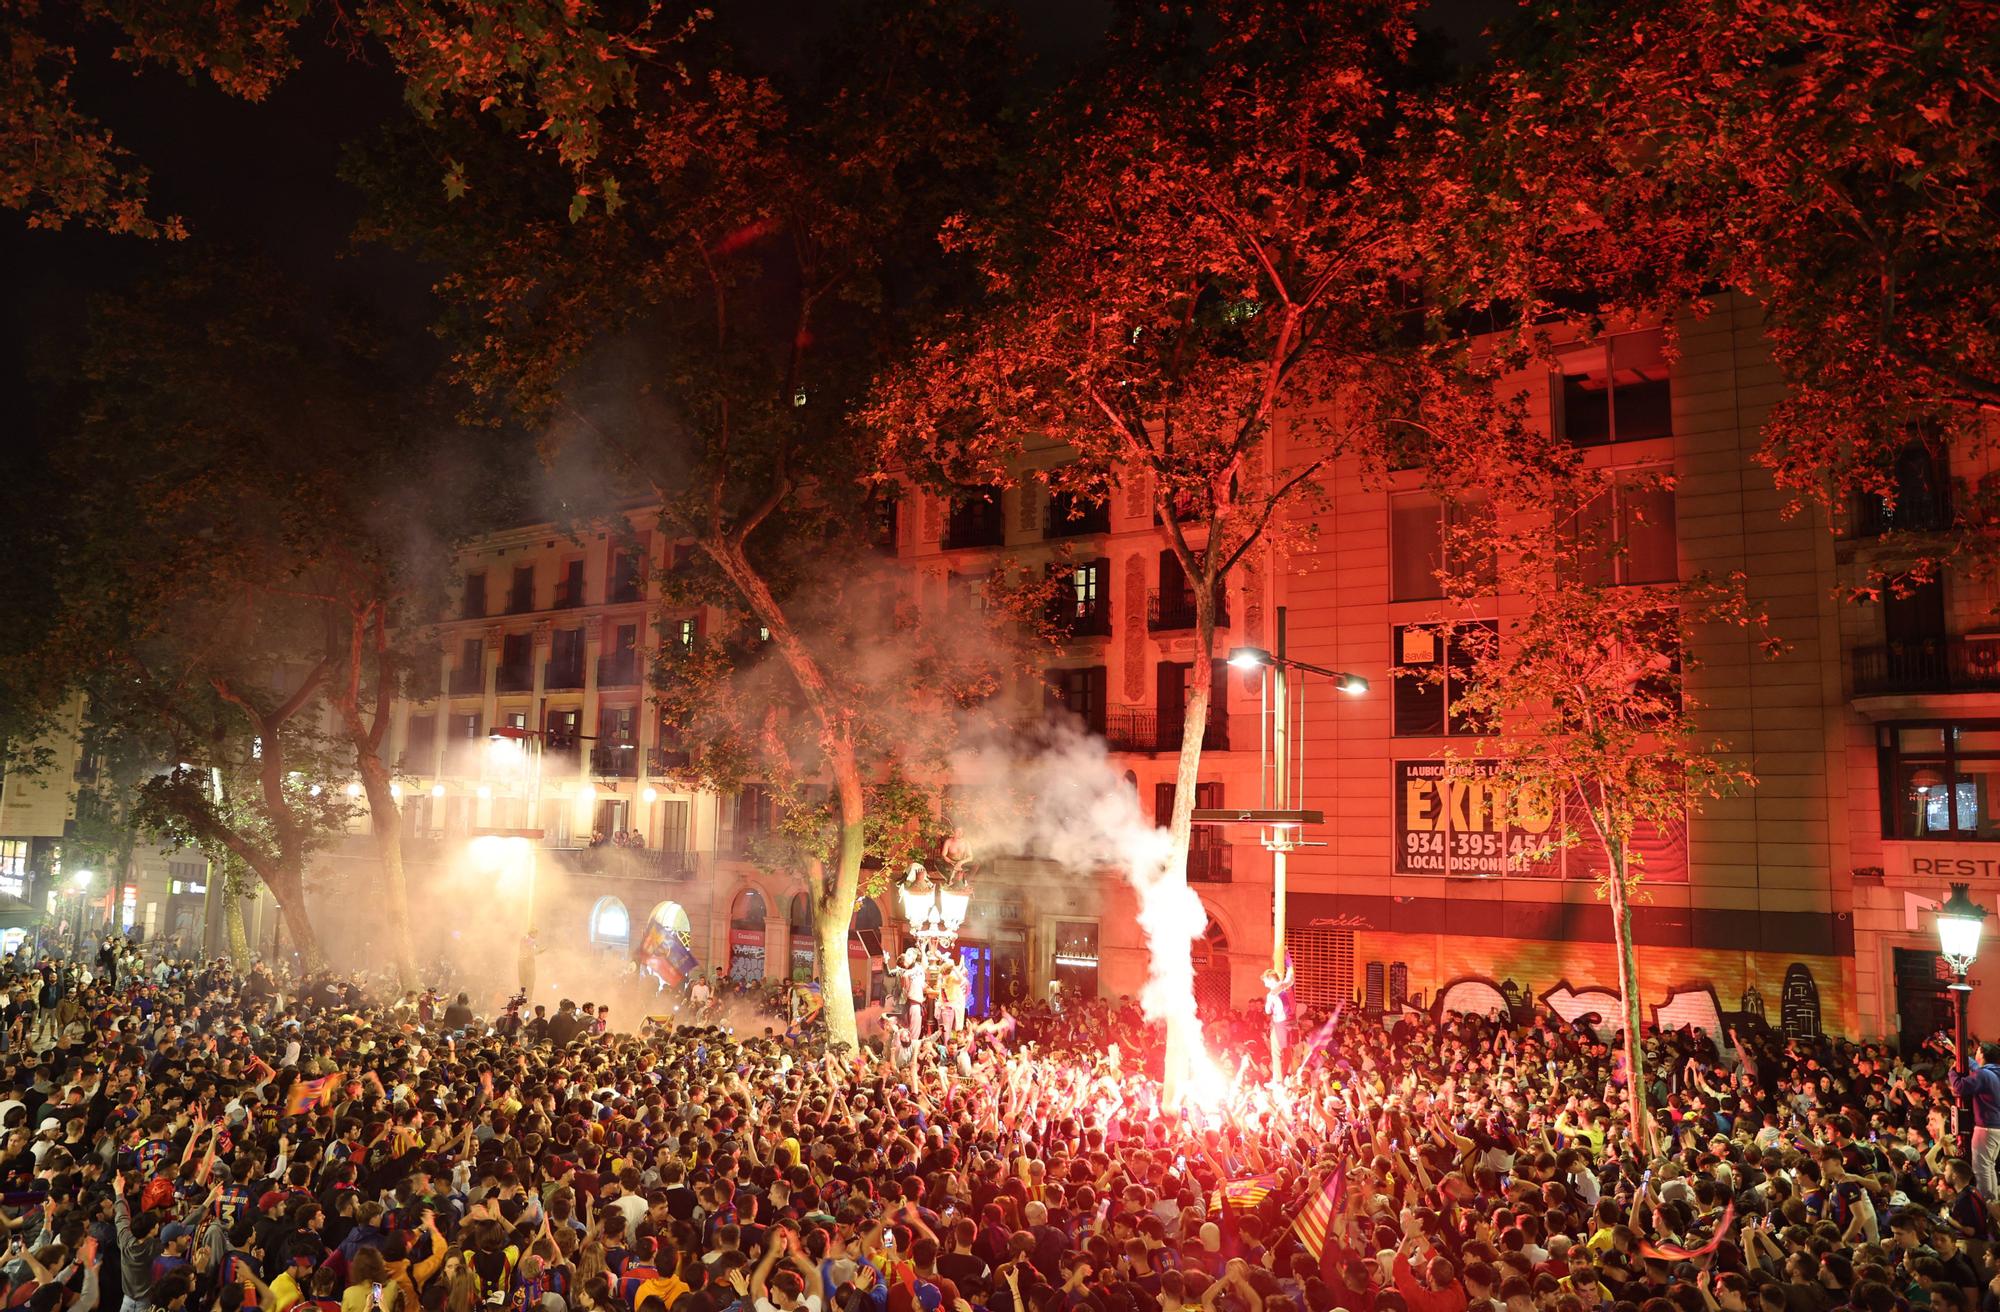 GALERIA | Els aficionats del Barça tornen a Canaletes per celebrar la Lliga